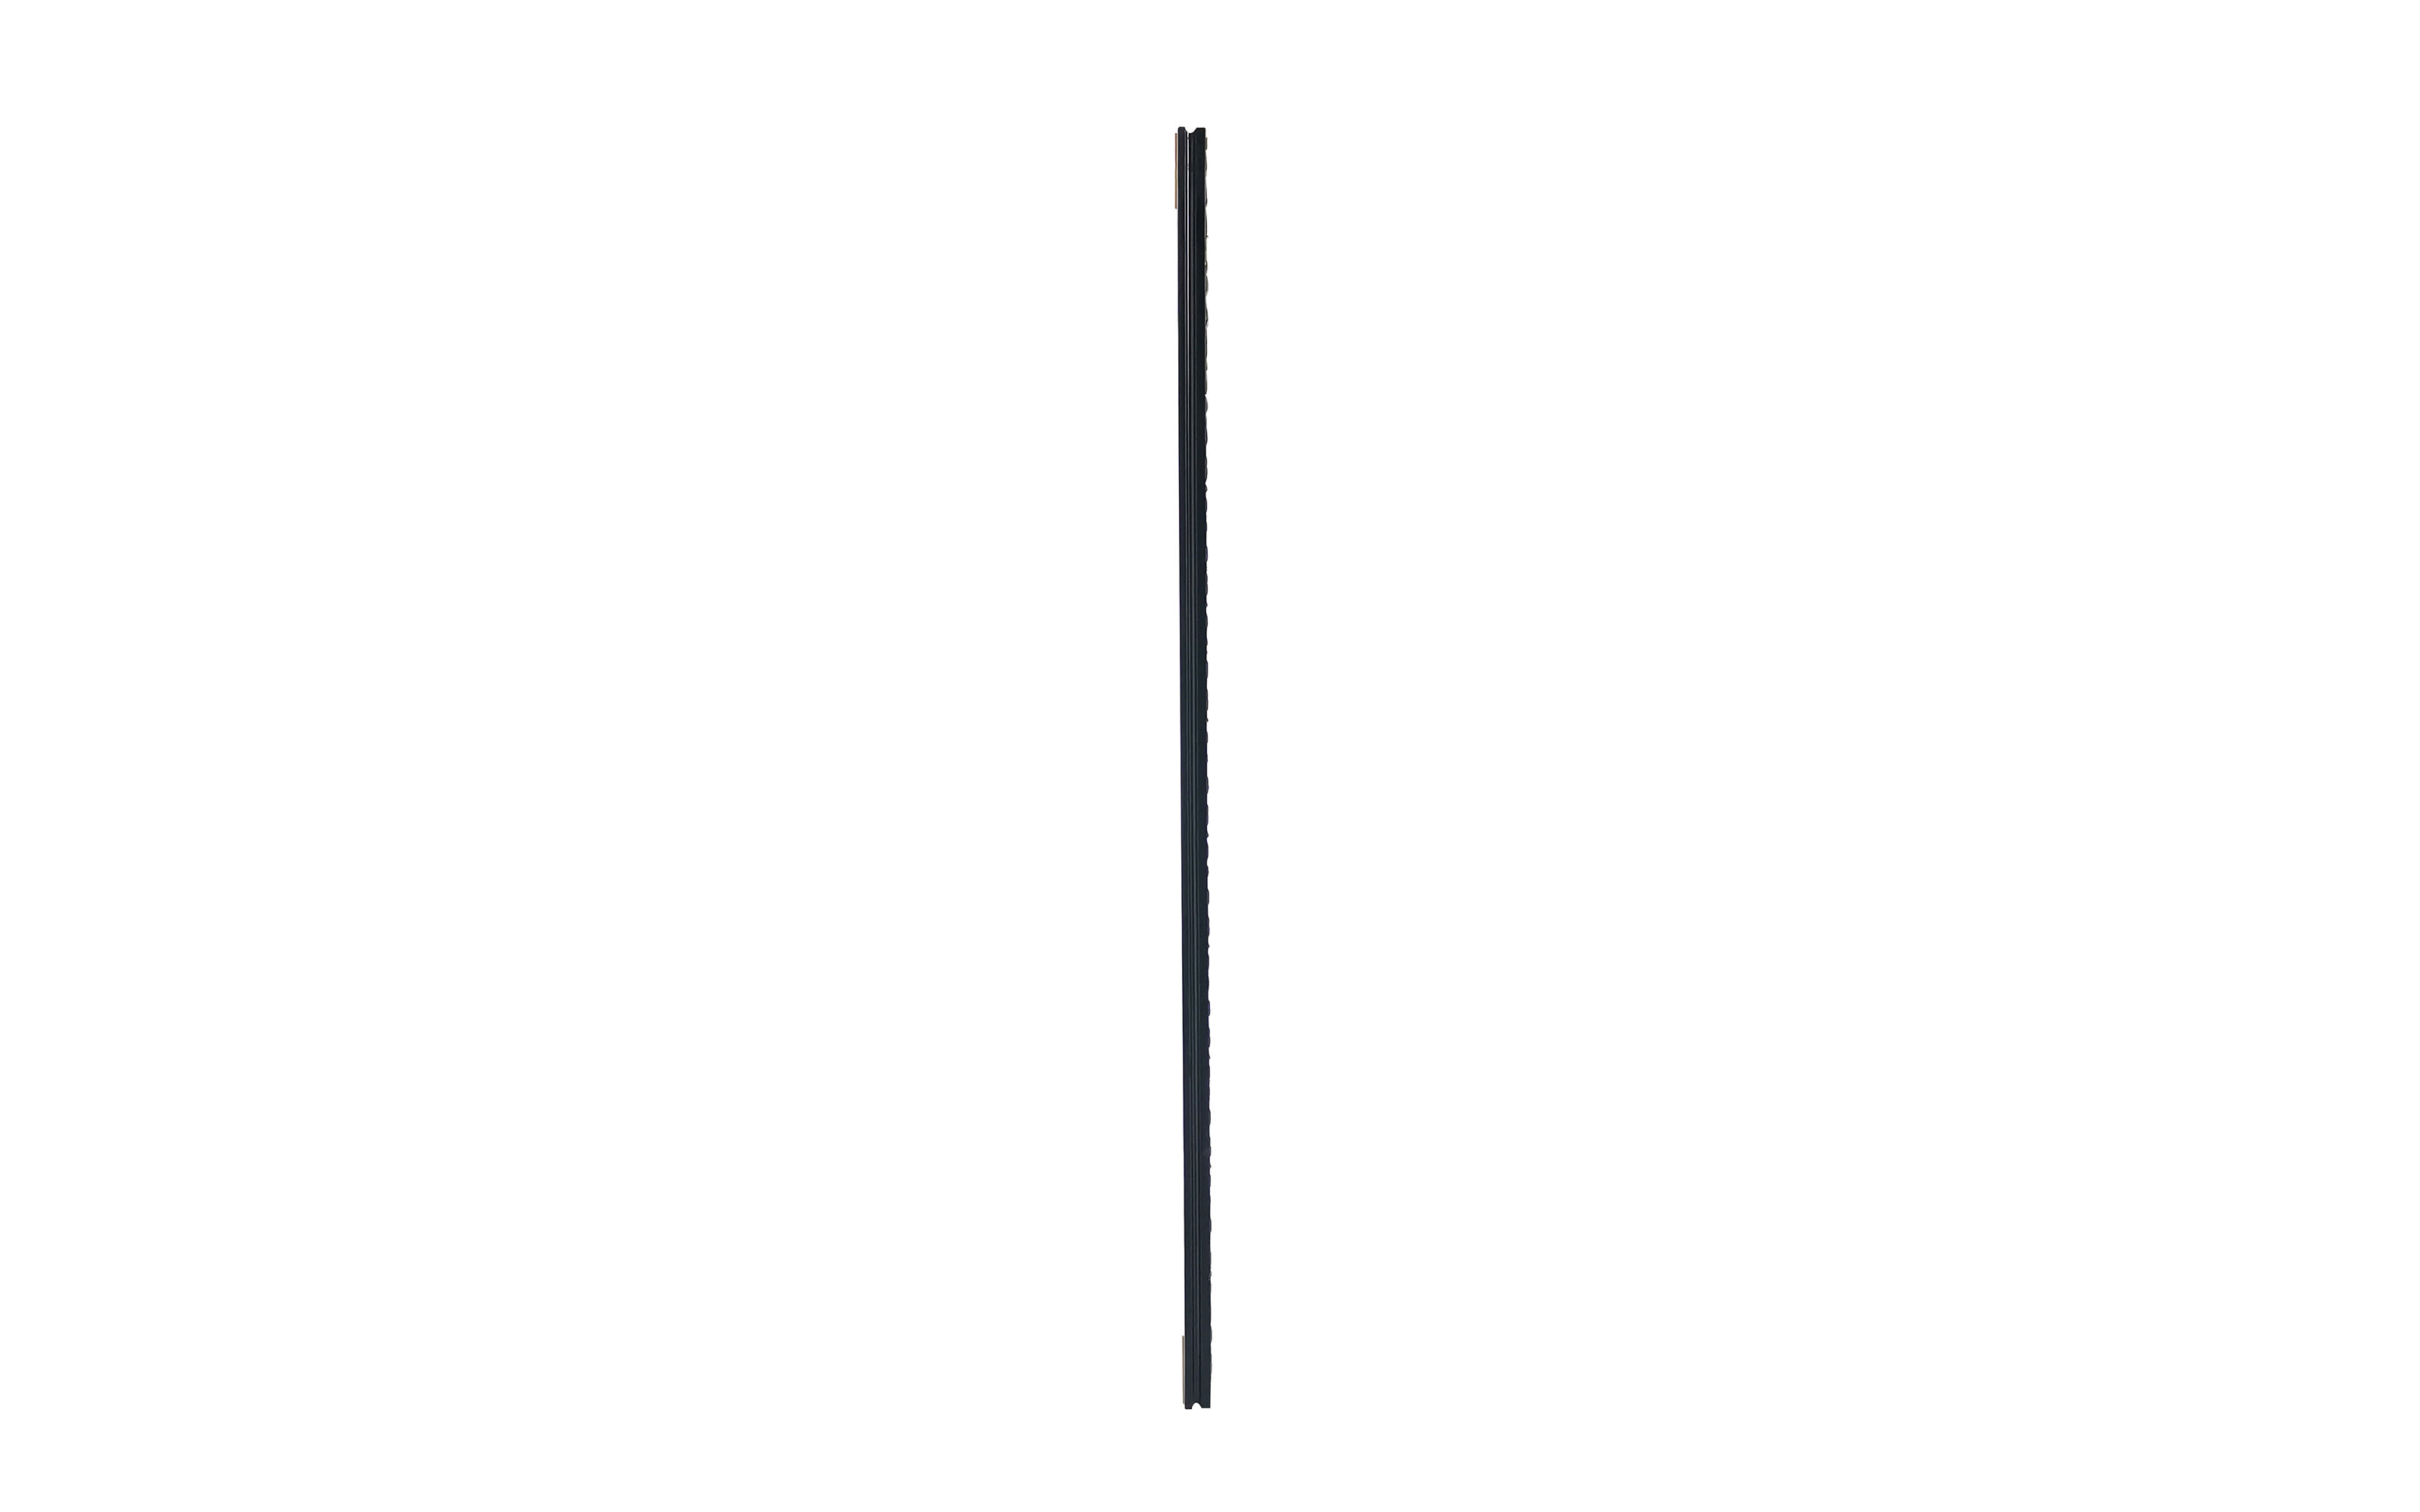 Rahmenspiegel Sonja, schwarz/silberfarbig, 50 x 150 cm